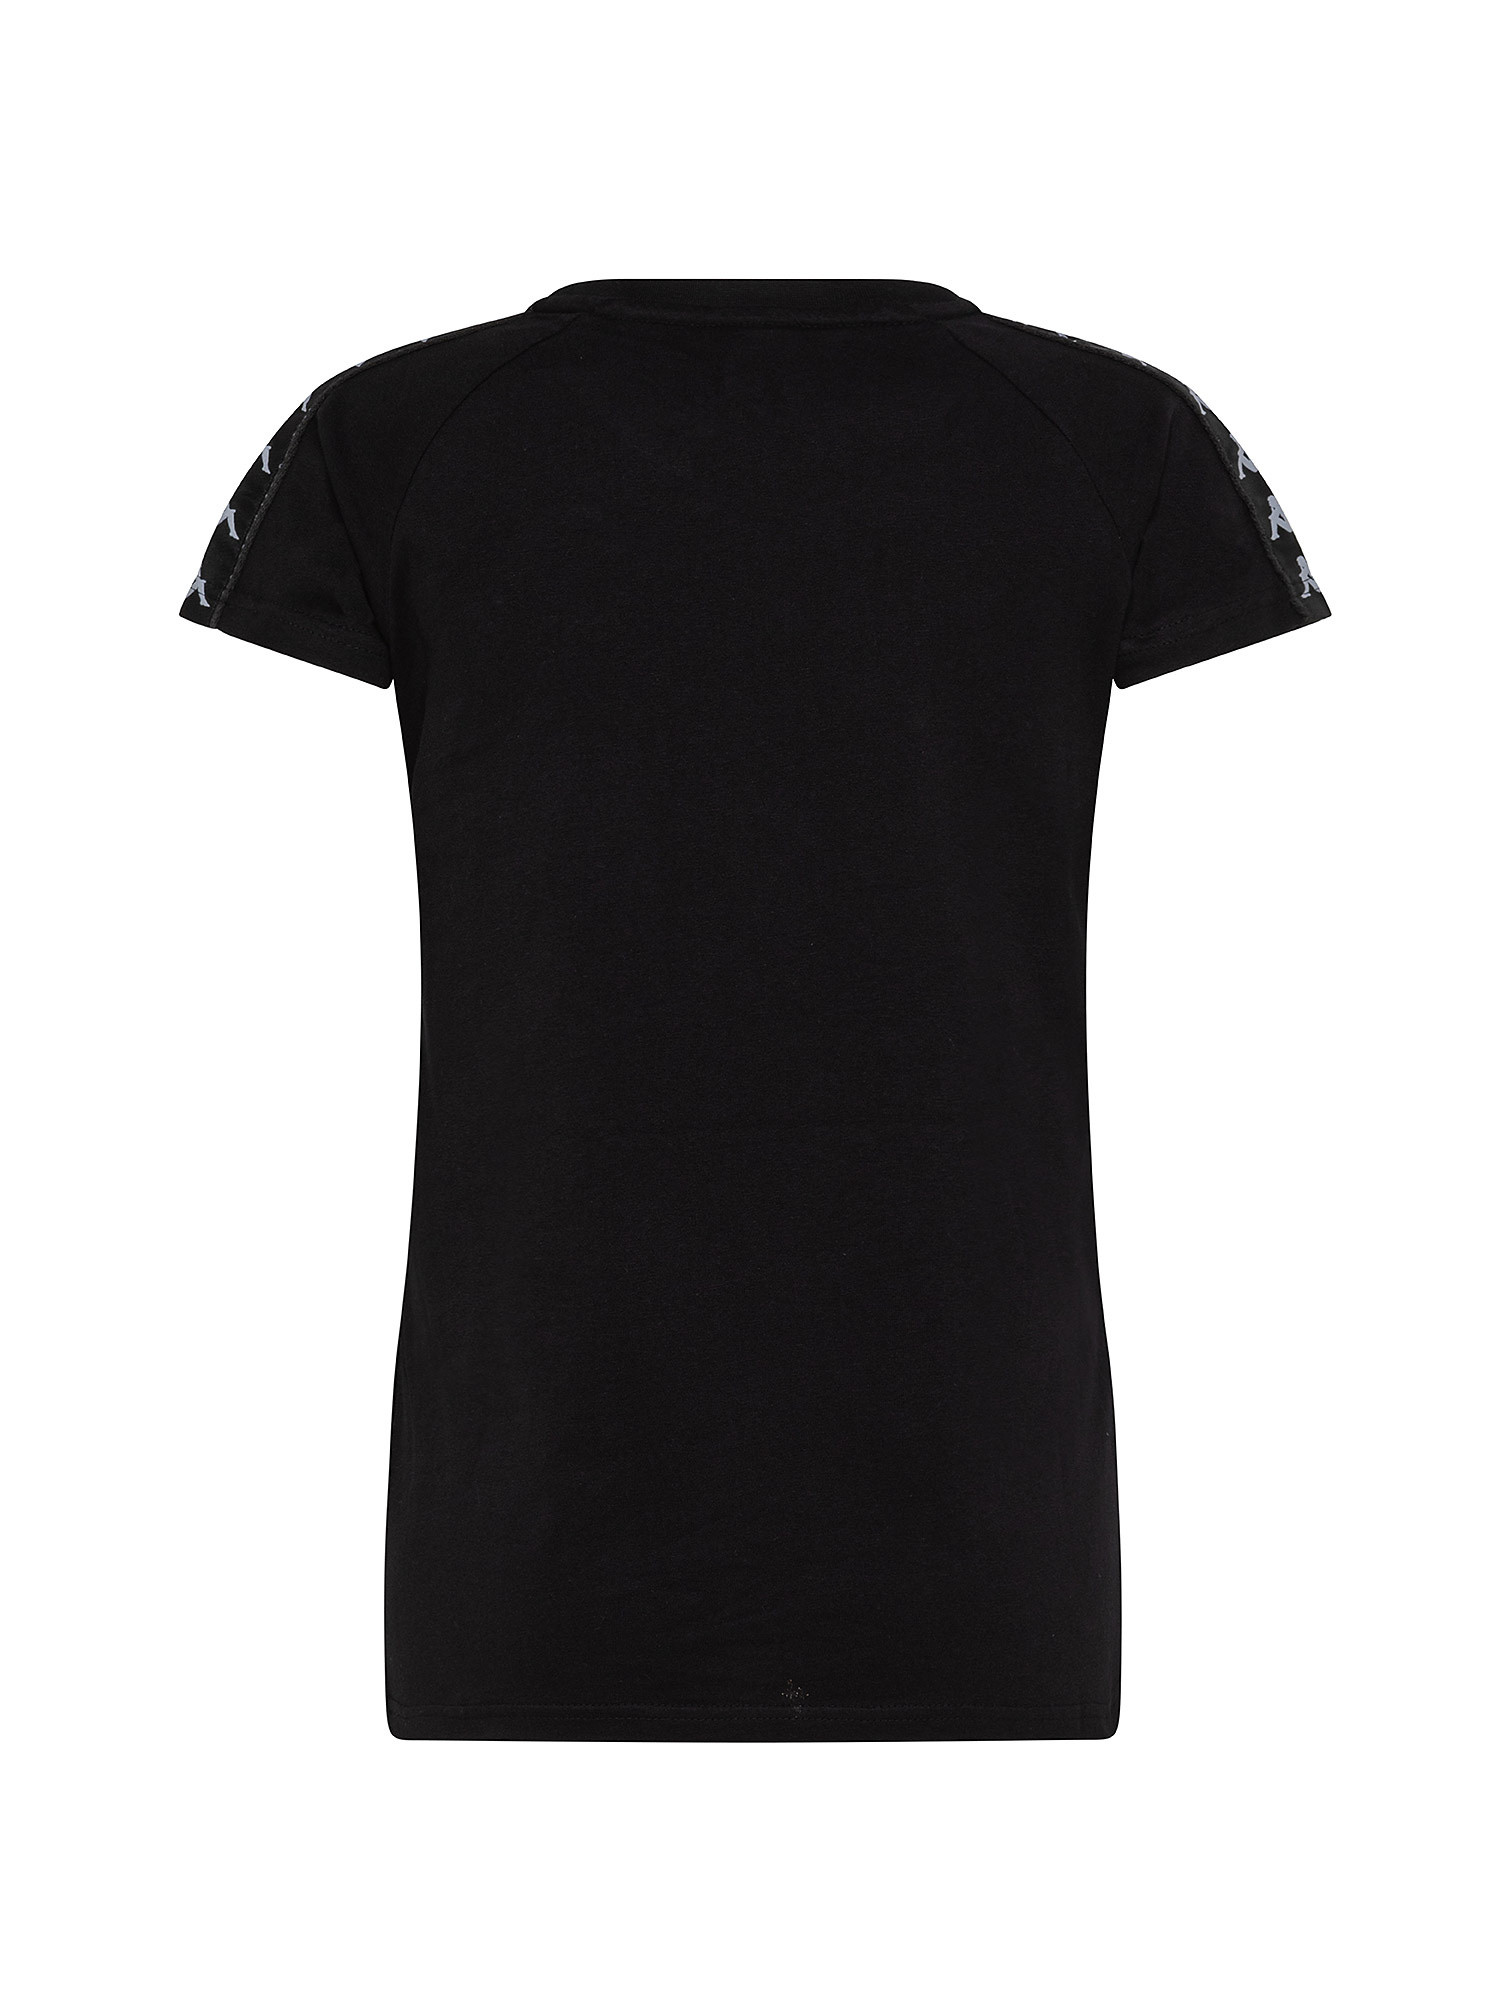 T-shirt, Black, large image number 1